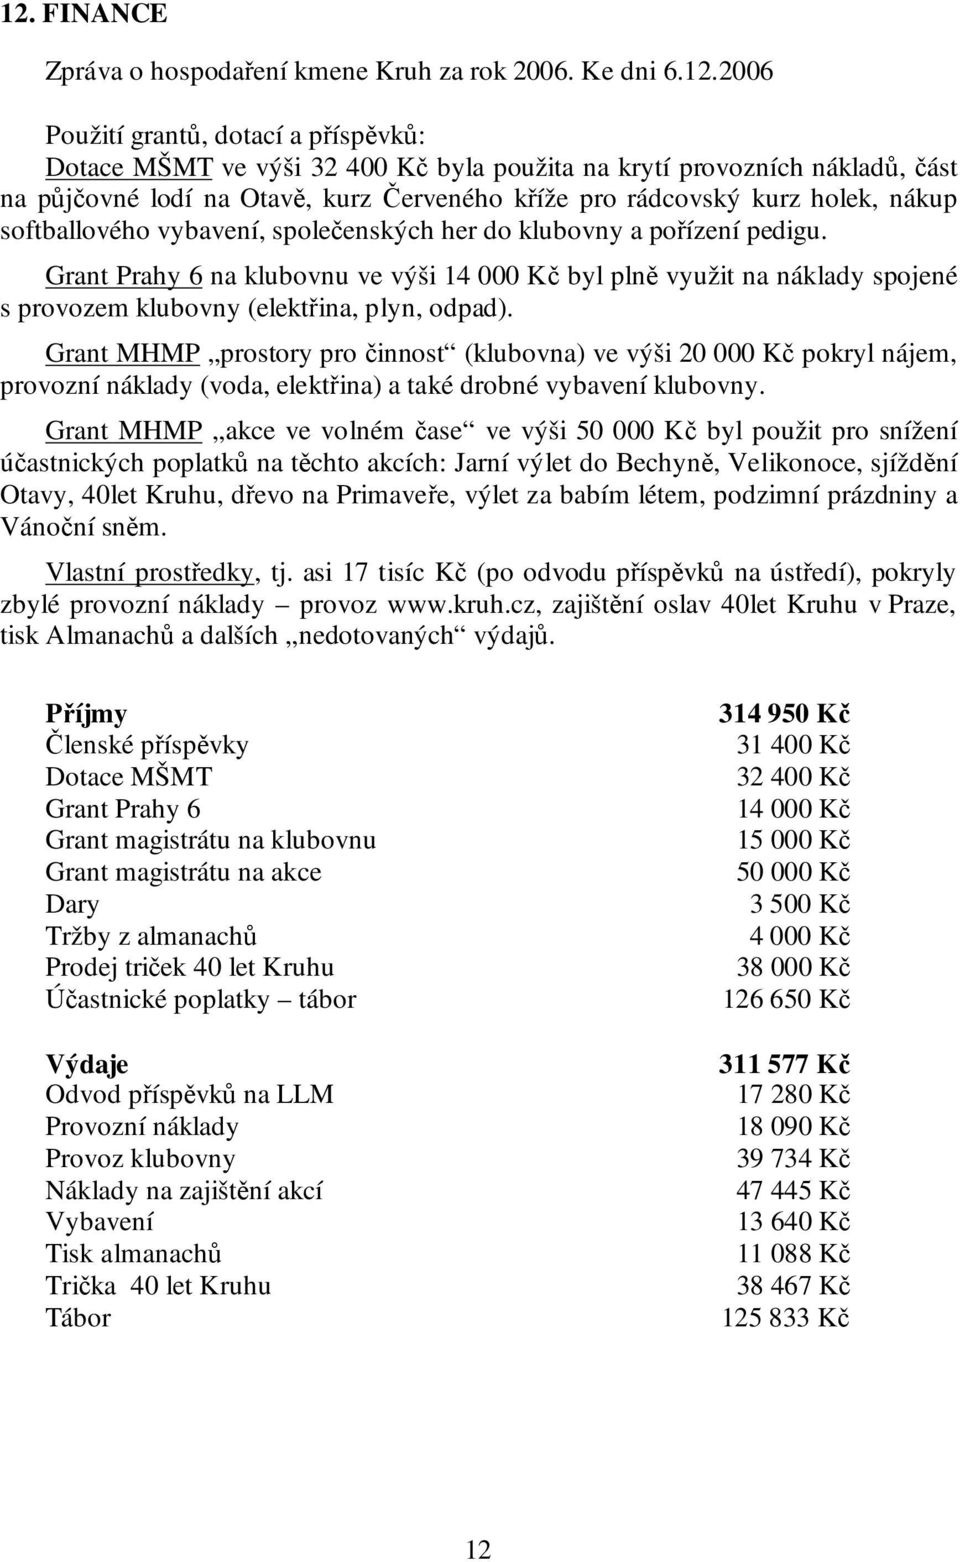 Grant Prahy 6 na klubovnu ve výši 14 000 Kč byl plně využit na náklady spojené s provozem klubovny (elektřina, plyn, odpad).